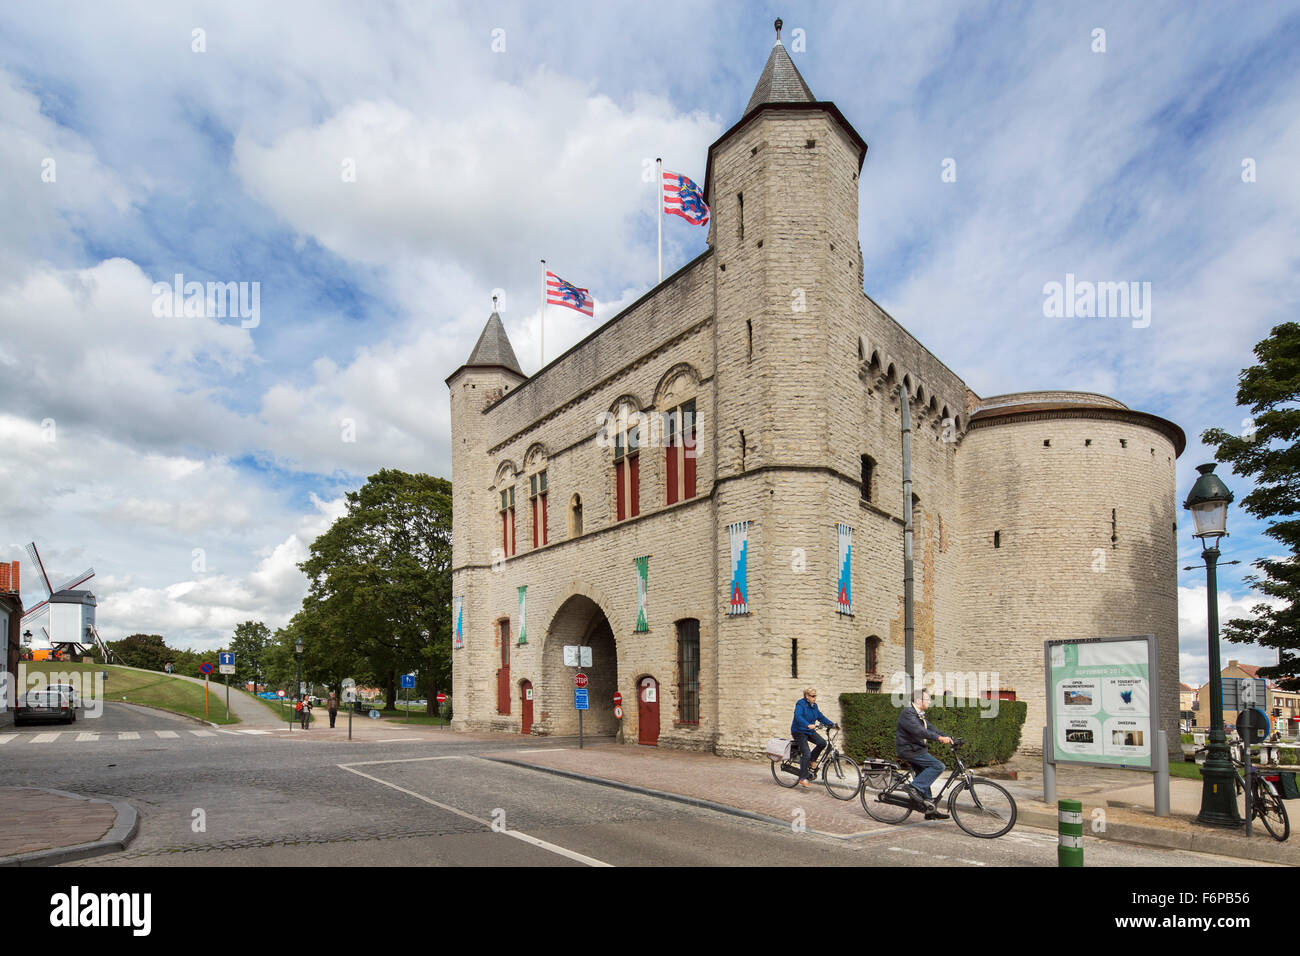 La puerta de la ciudad medieval, Kruispoort, en Brujas, Flandes Occidental, Bélgica Foto de stock